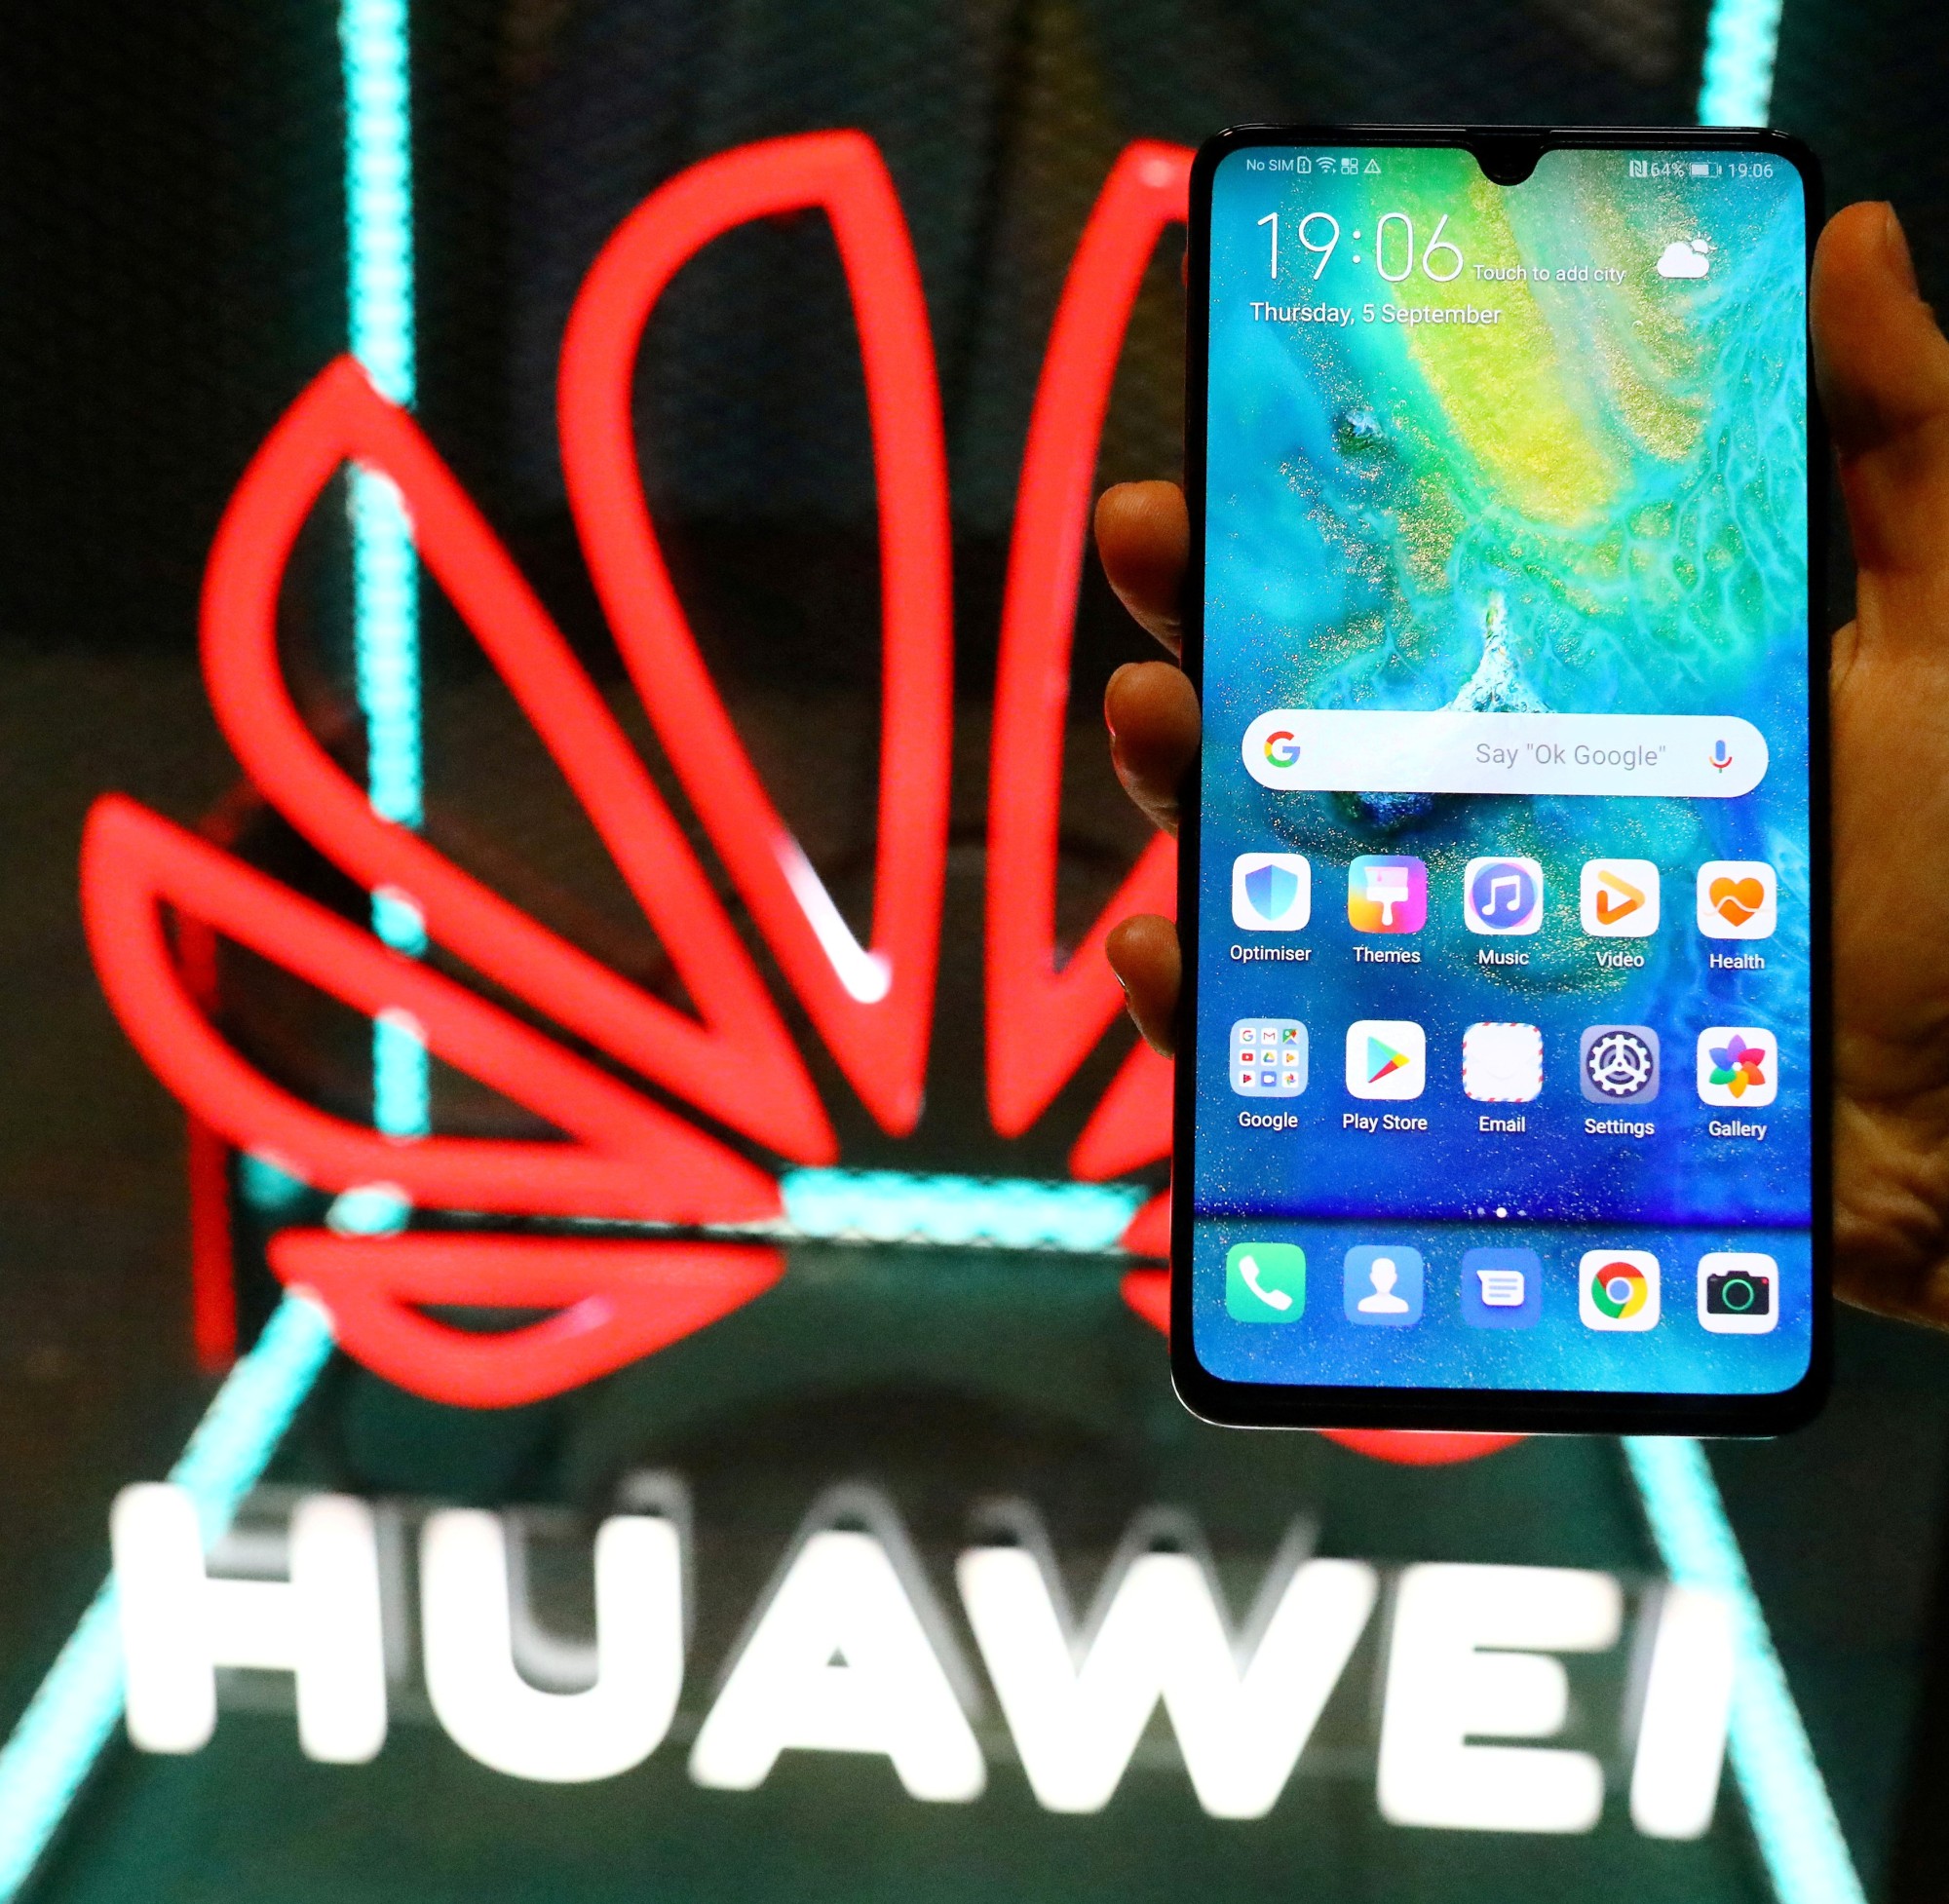 Doanh thu của Huawei trong nửa đầu năm nay đạt 320 tỷ nhân dân tệ (49,5 tỷ USD), giảm 29,4% so với năm trước.